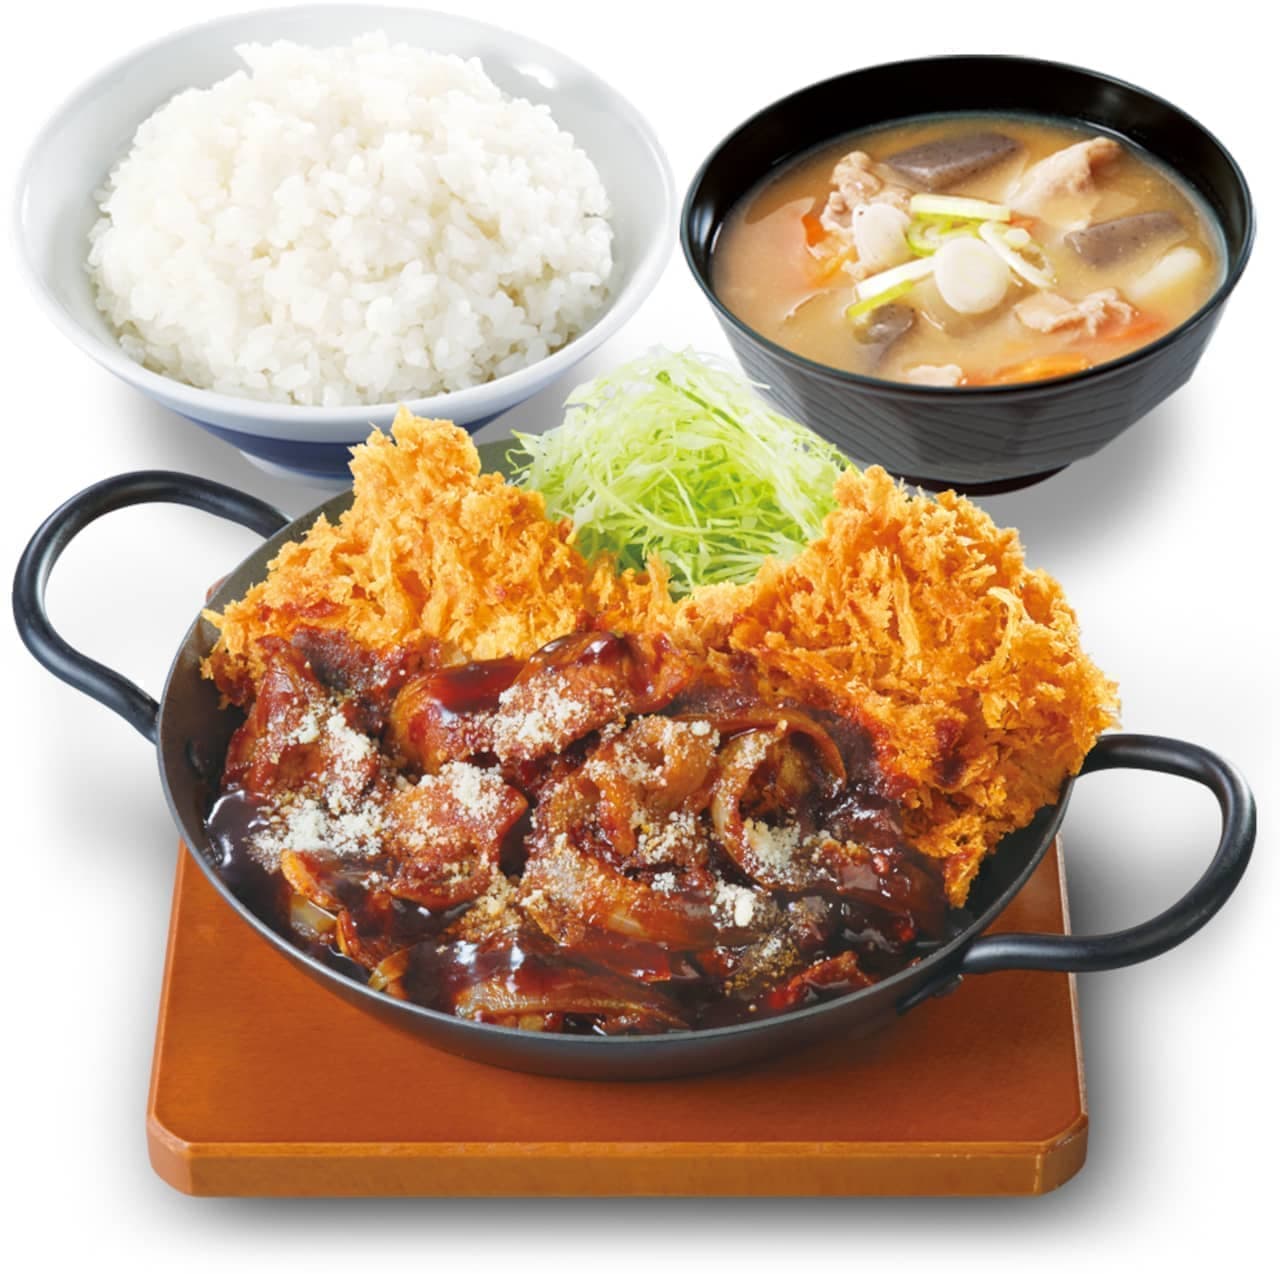 Katsuya "Demi chicken cutlet set meal